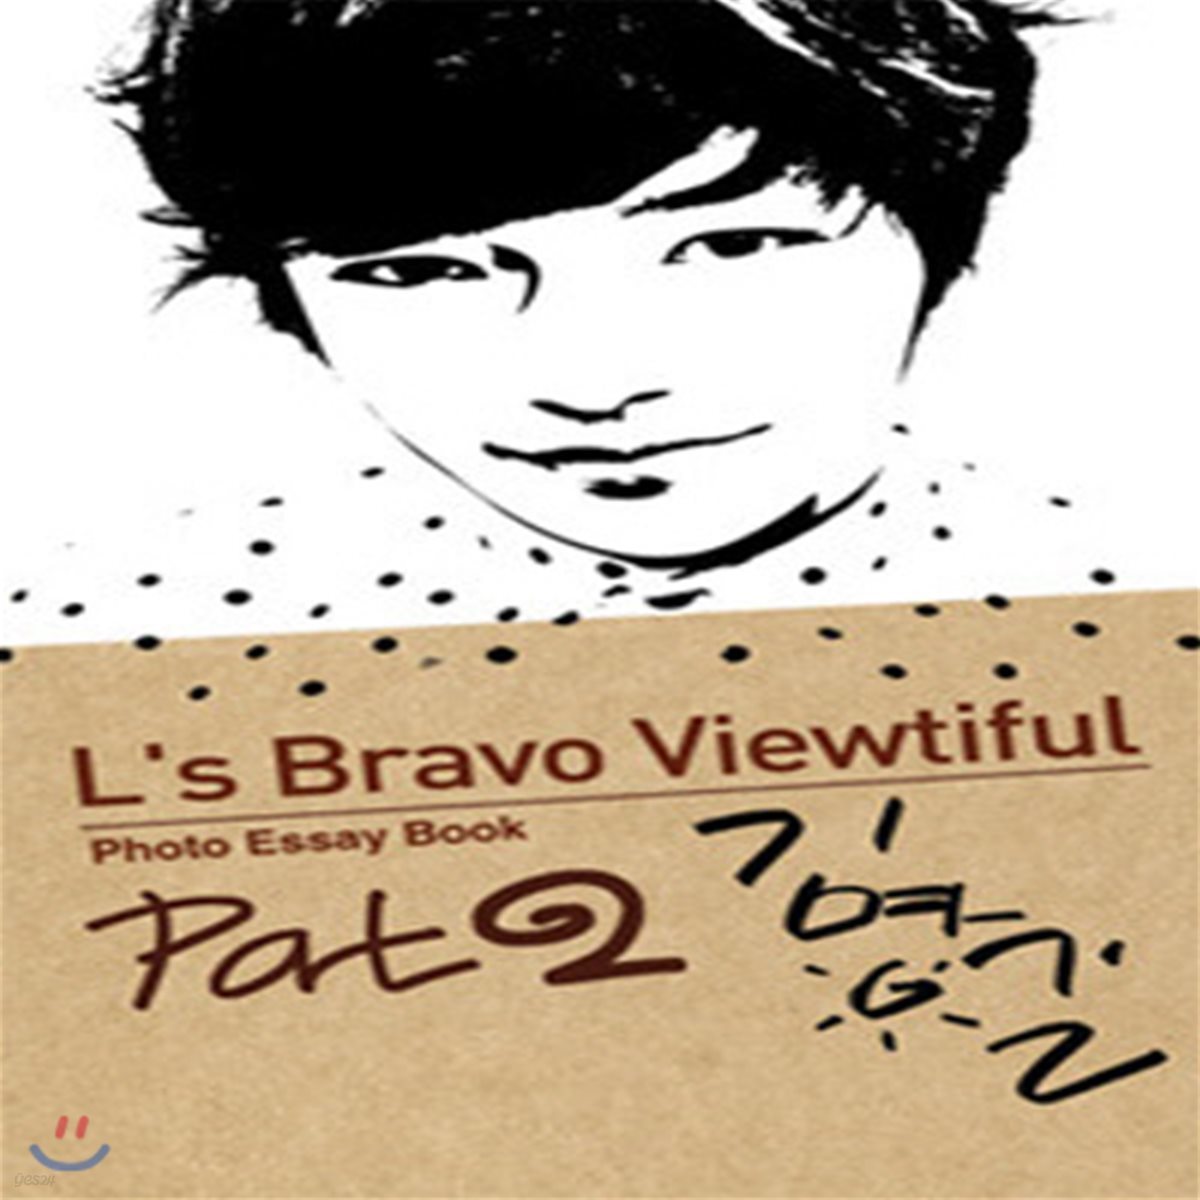 [중고] [도서] 김명수(인피니트엘) / L's Bravo Viewtiful Part 2 (photo essay book)